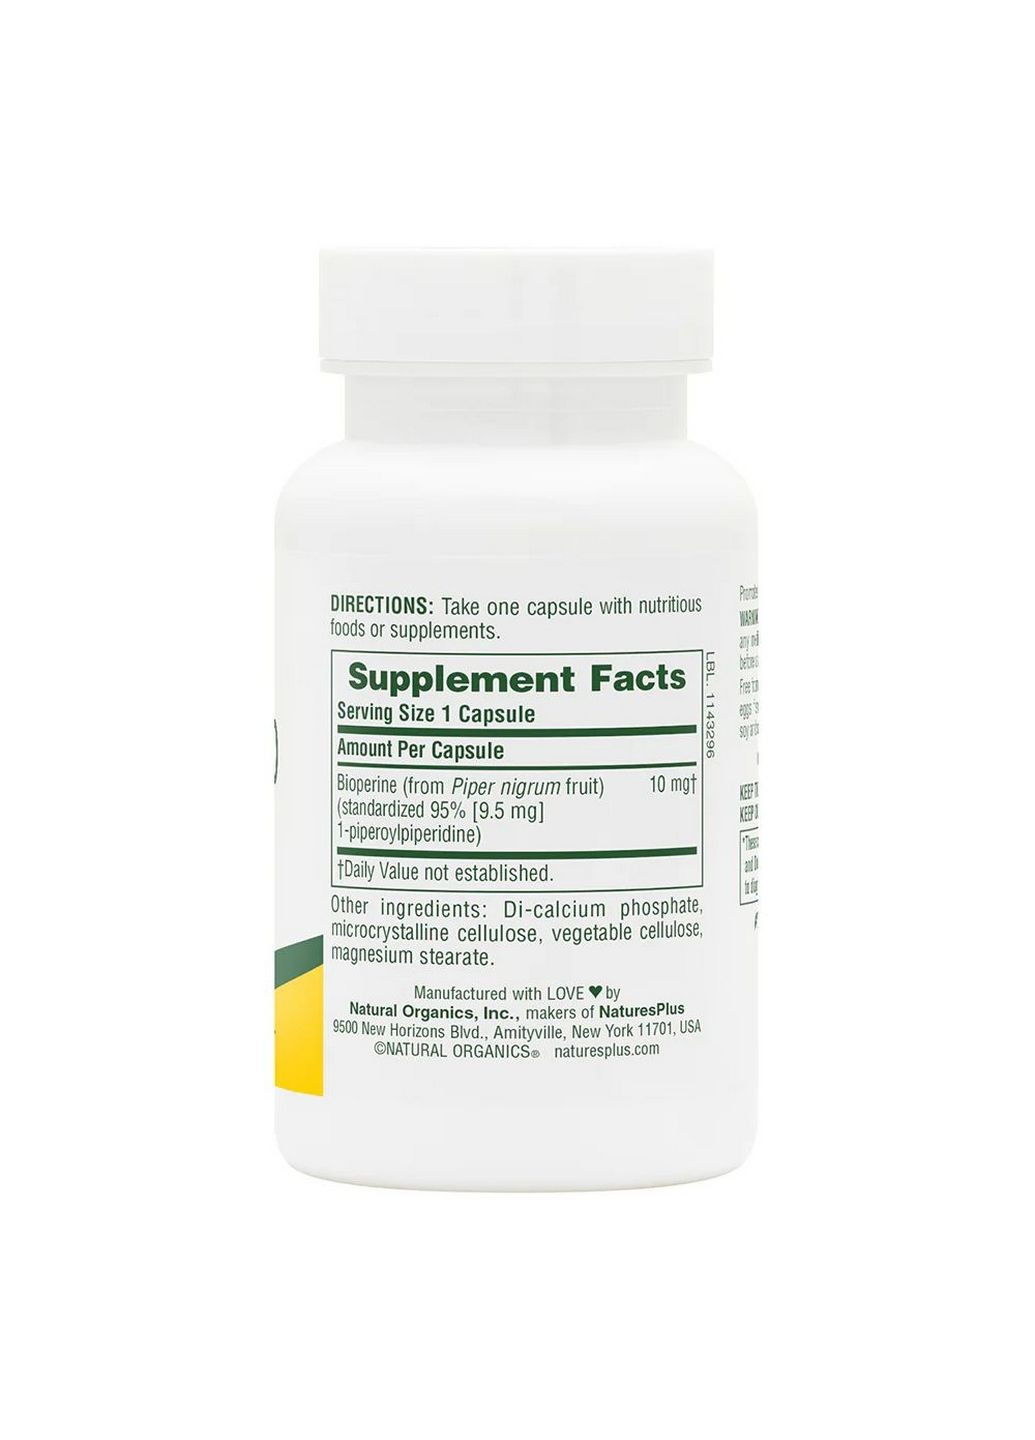 Натуральная добавка Bioperine 10 mg, 90 капсул Natures Plus (293338098)